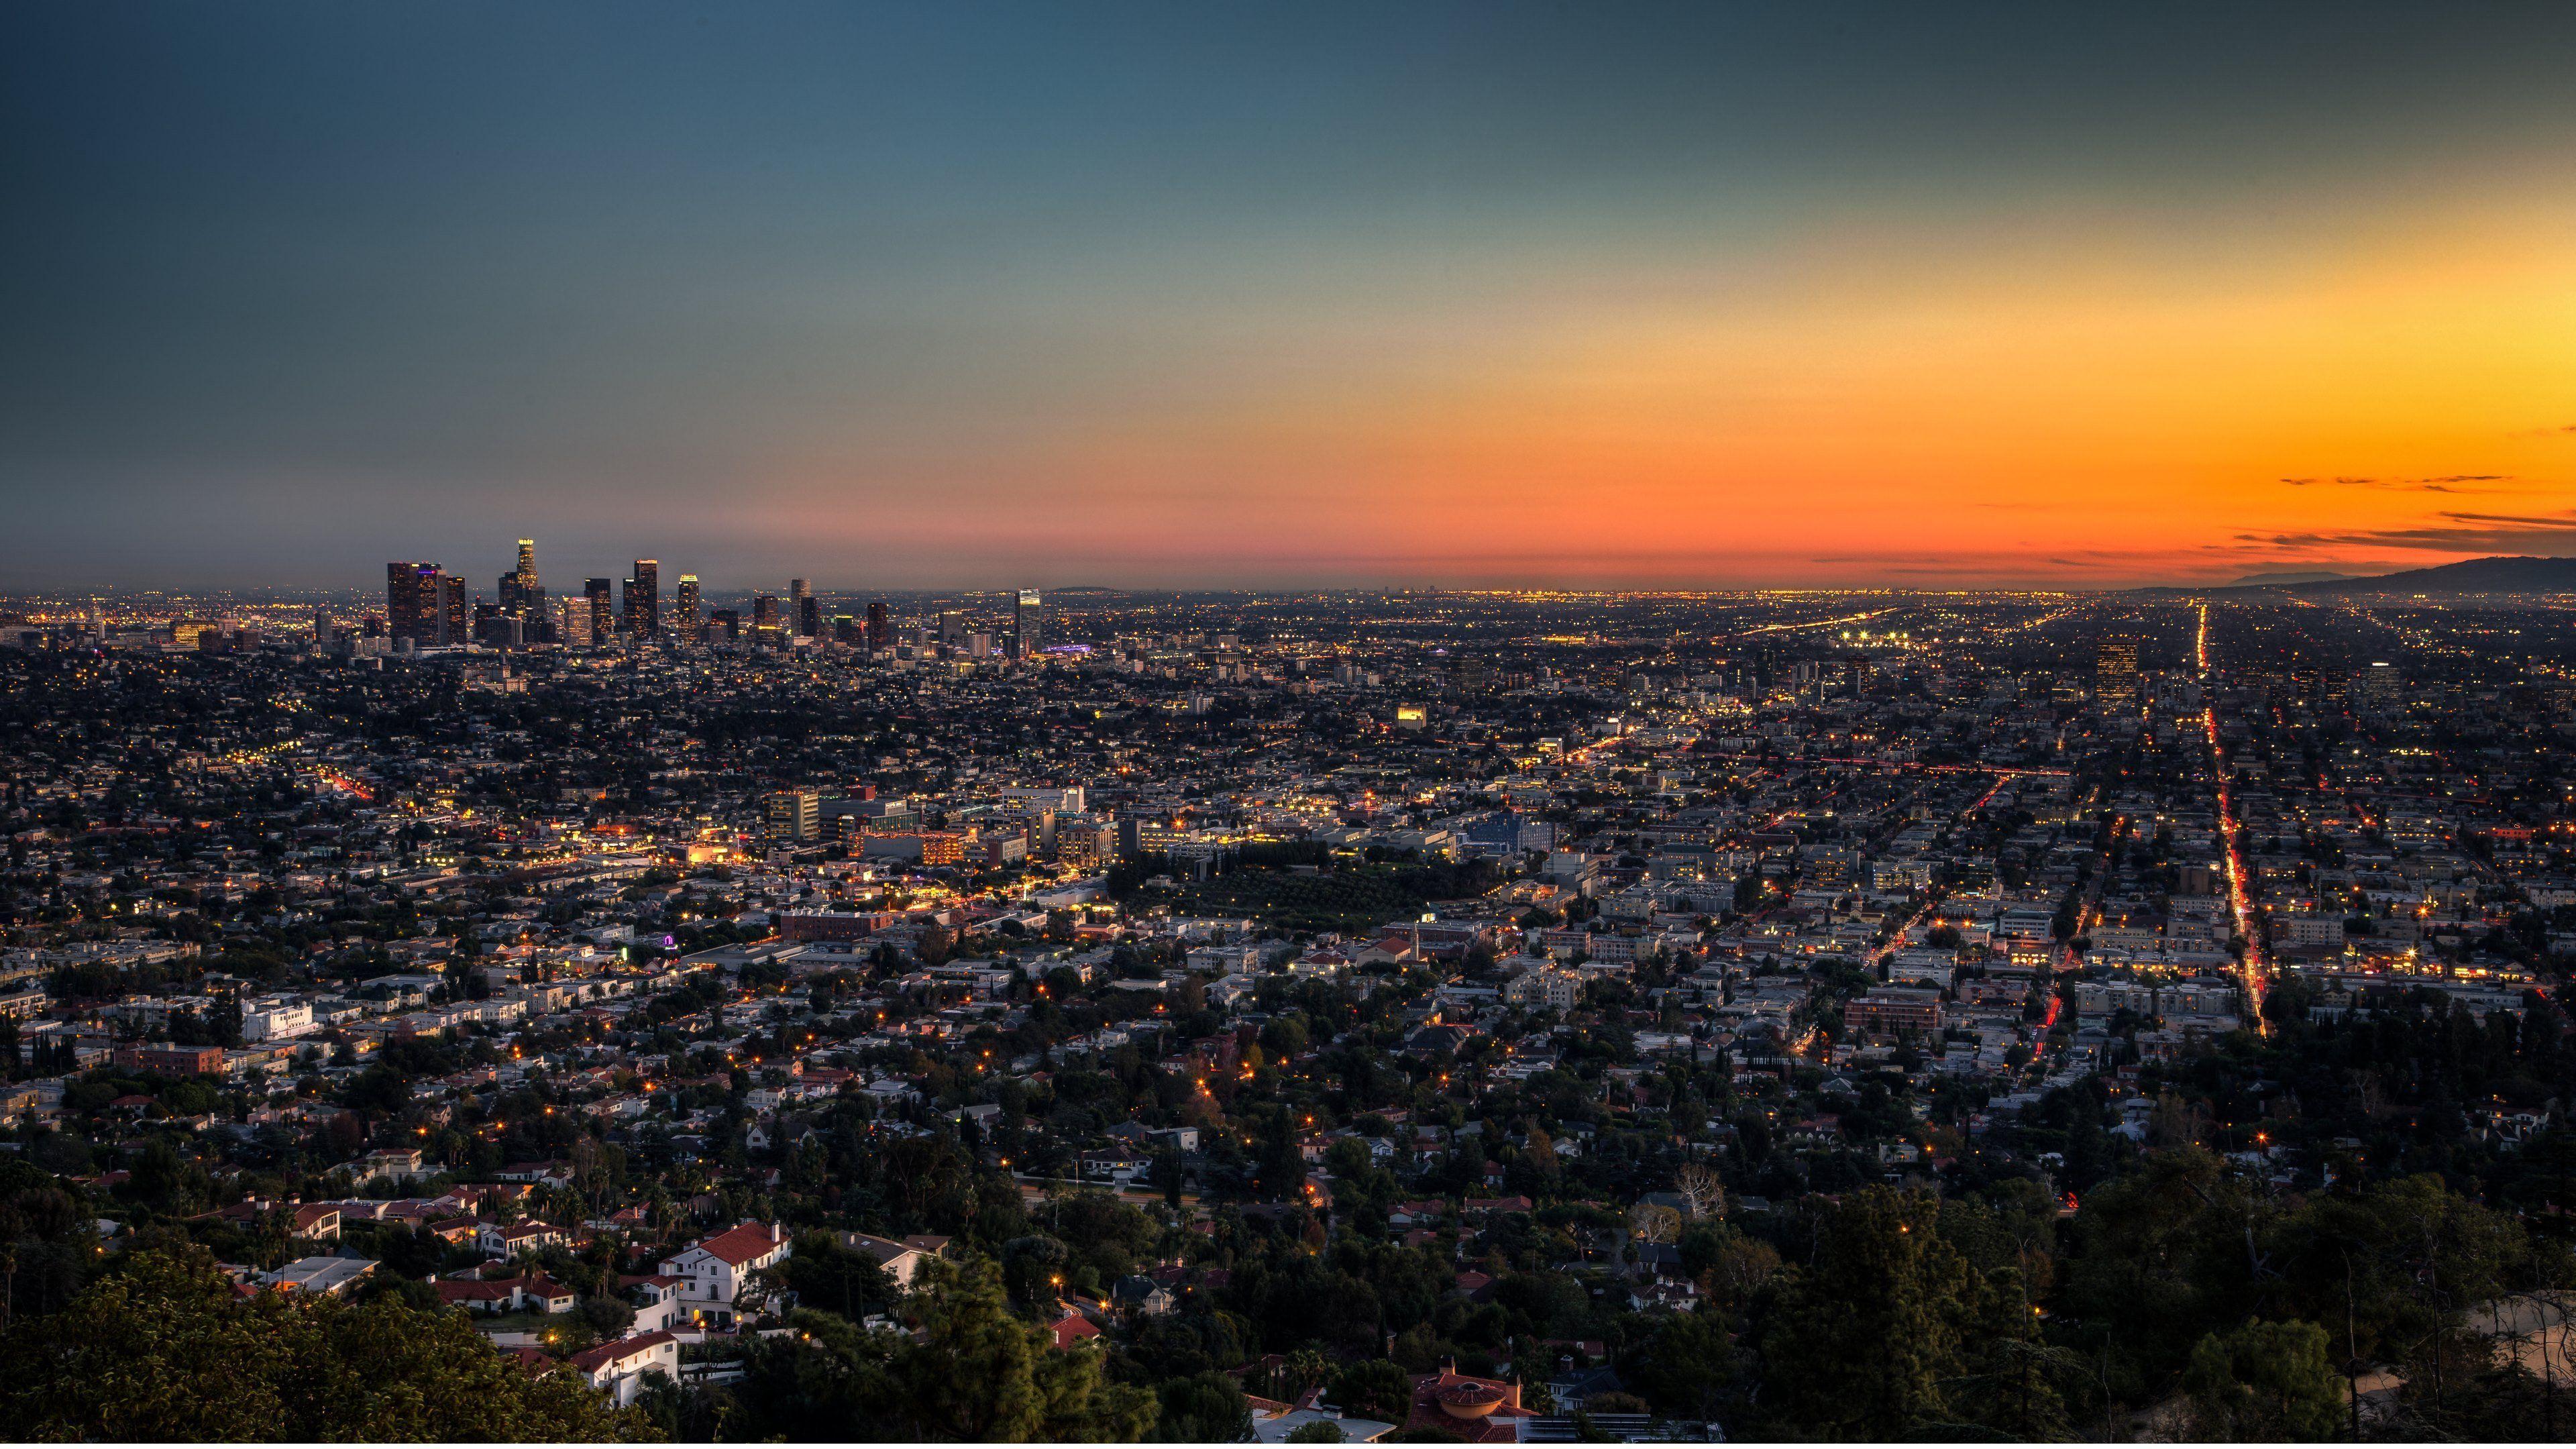 Ảnh nền 4K Los Angeles là lựa chọn tuyệt vời để bạn có thể trải nghiệm độ sắc nét và sinh động của thành phố này. Với chất lượng hình ảnh siêu nét, bạn sẽ như được đưa tới L.A. trong đời thực ngay trên màn hình thiết bị của mình.